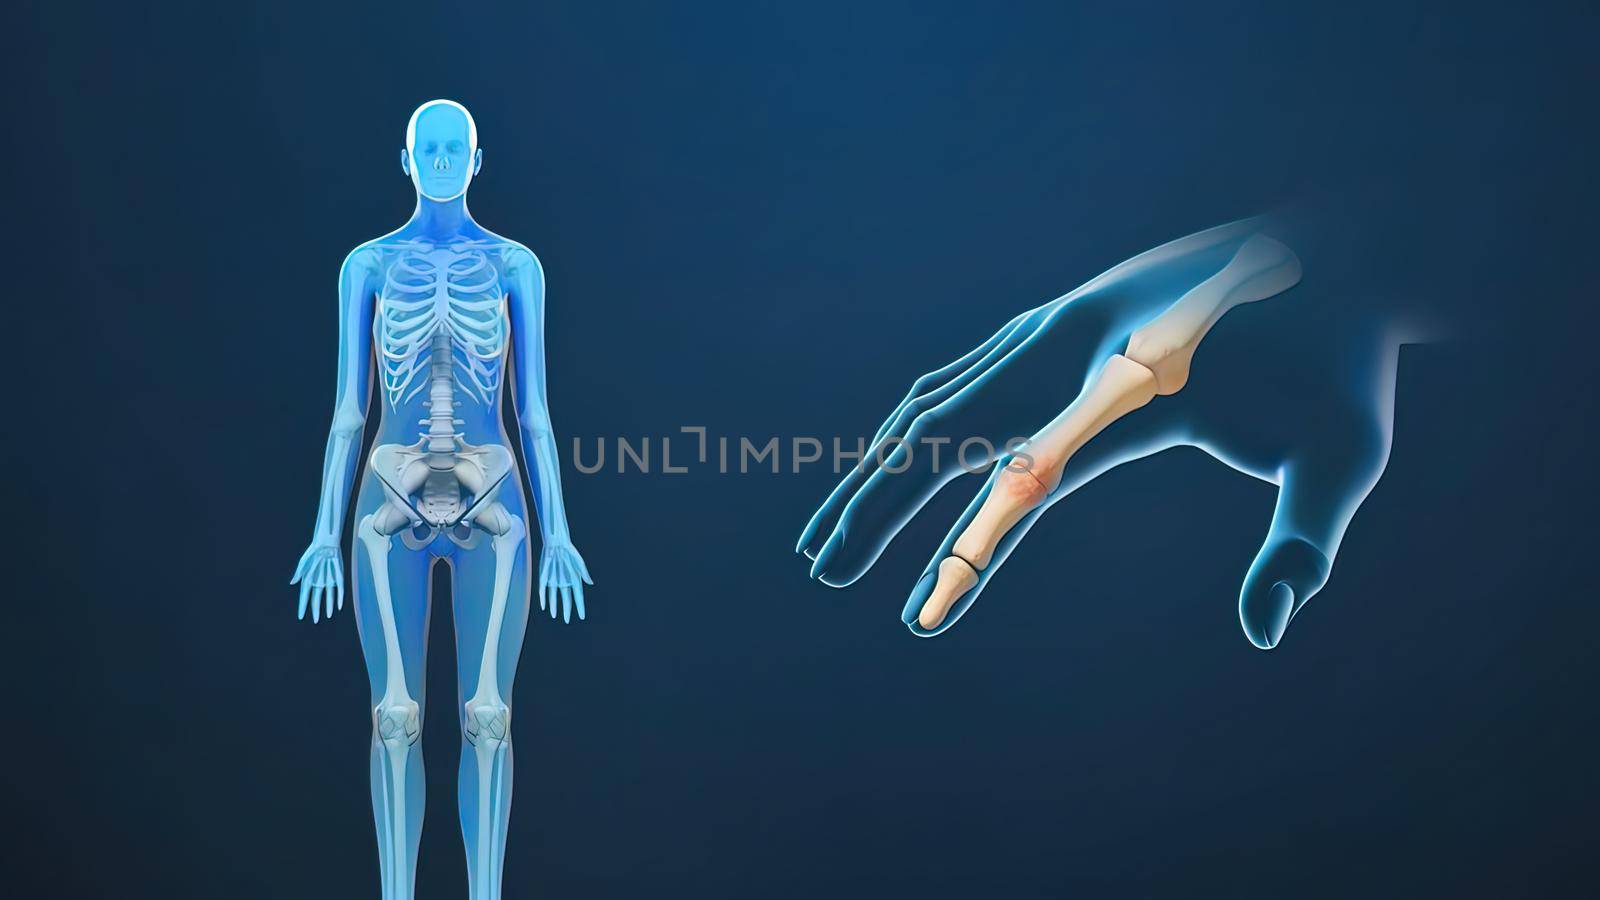 joint pain, rheumatoid arthritis and osteoarthritis by creativepic